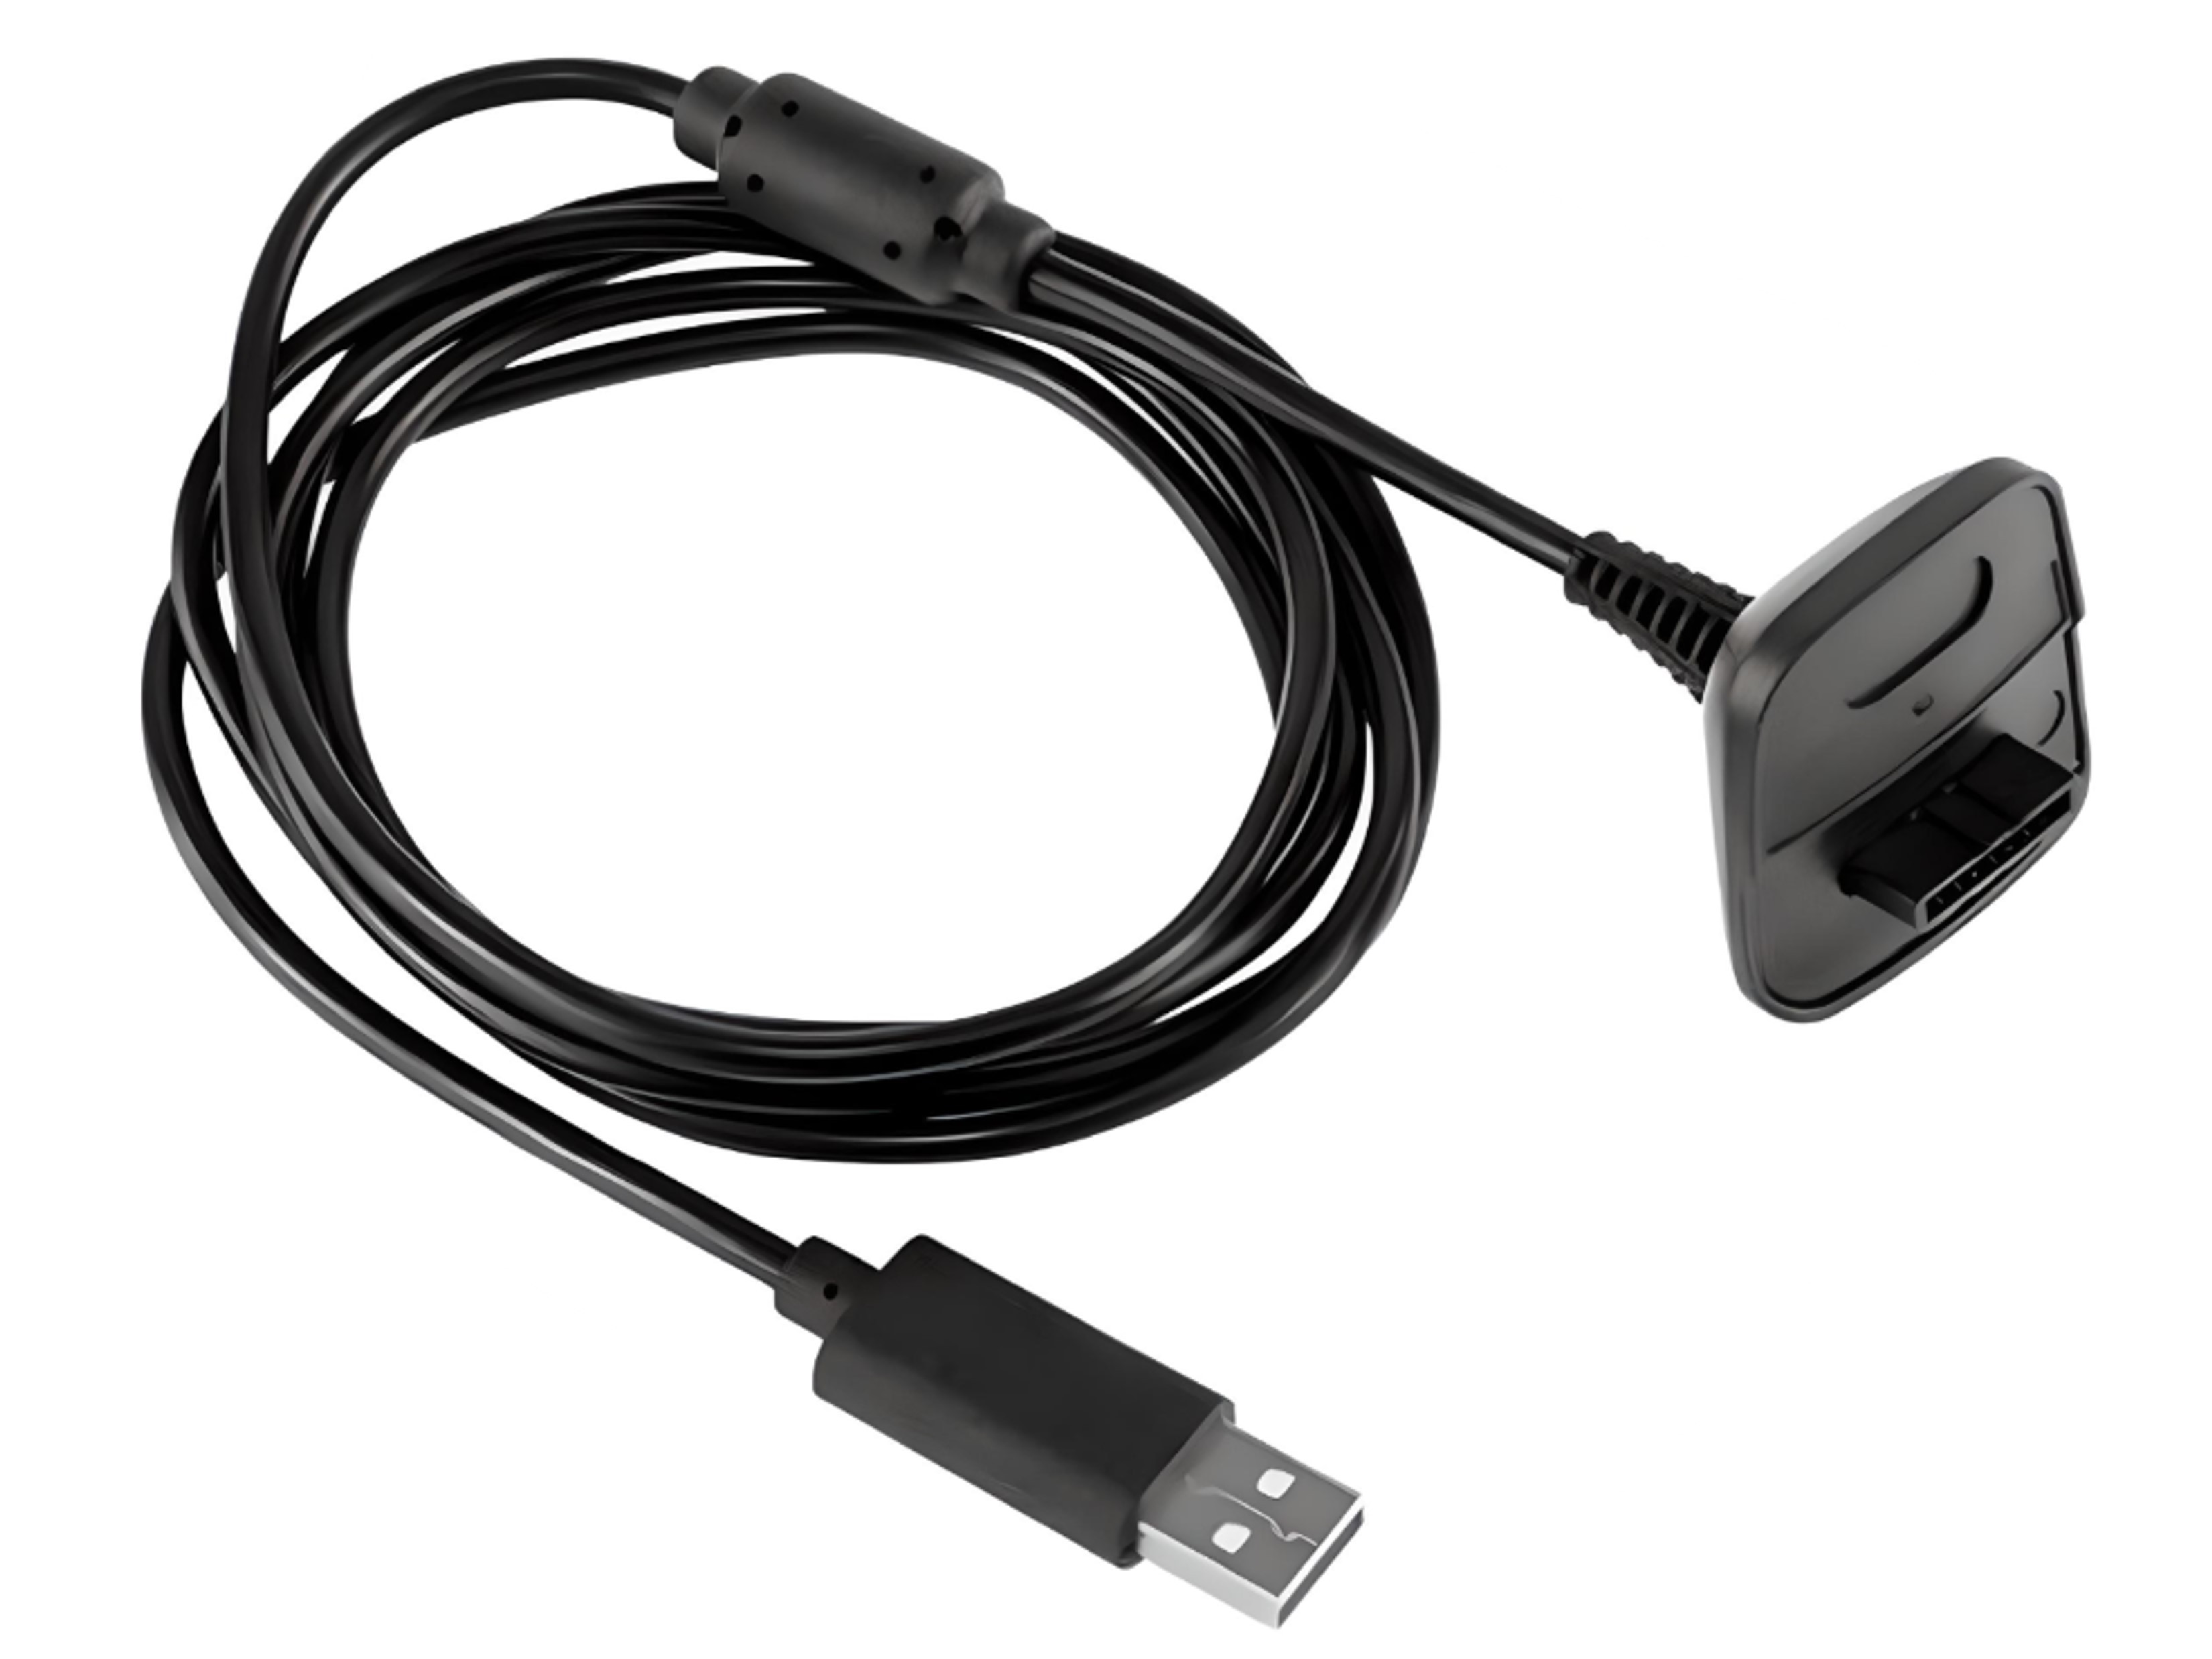 Nieuwe Play & Charge Kabel voor de Xbox 360 Controller - Xbox 360 Hardware